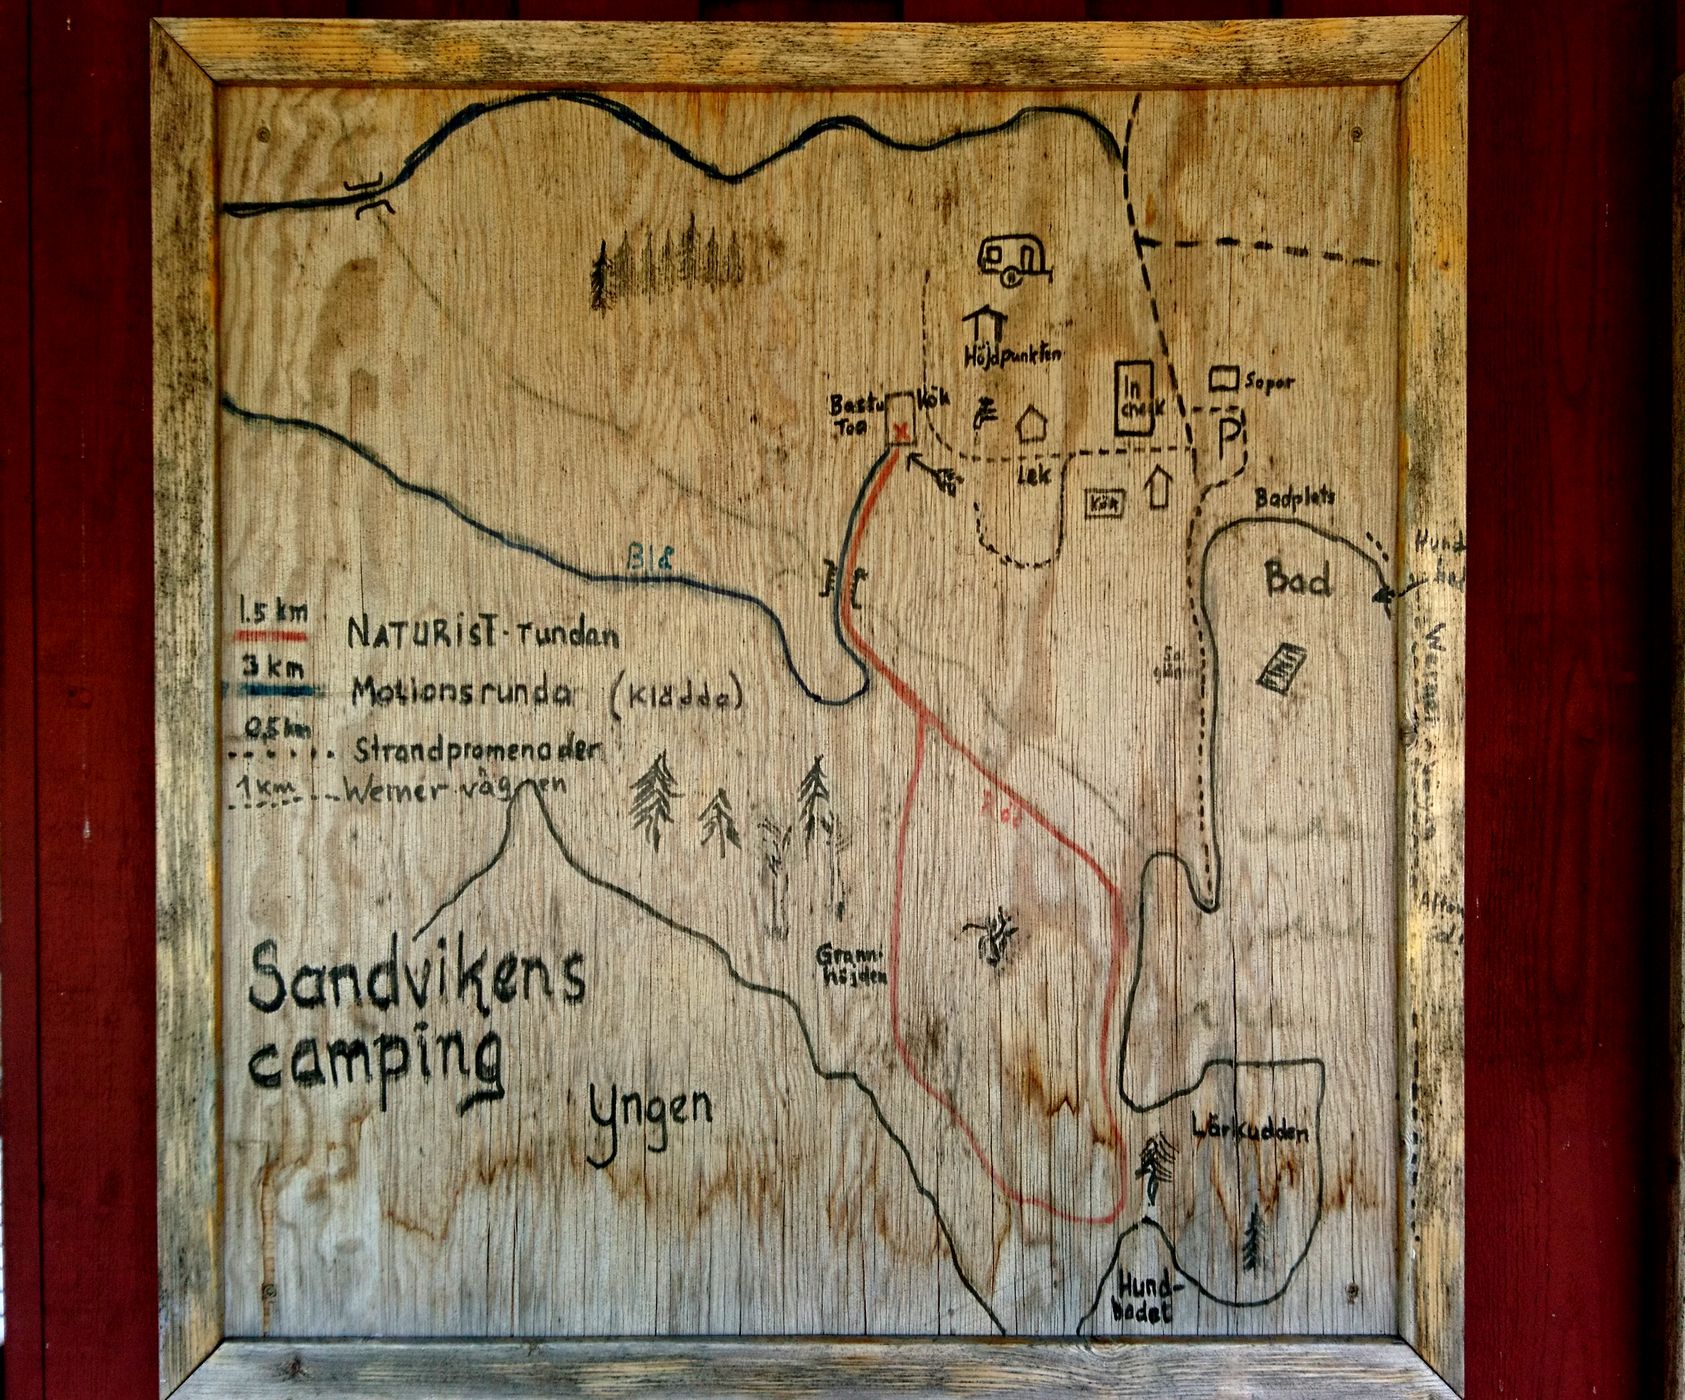 Le plan du camp, peint sur du bois, est affiché sur le mur d'une maison avec le rouge typique des maisons en bois suédoises. Le « Motionsrunda » (tour d'exercice) doit être effectué en klädda (vêtements) (1/15)